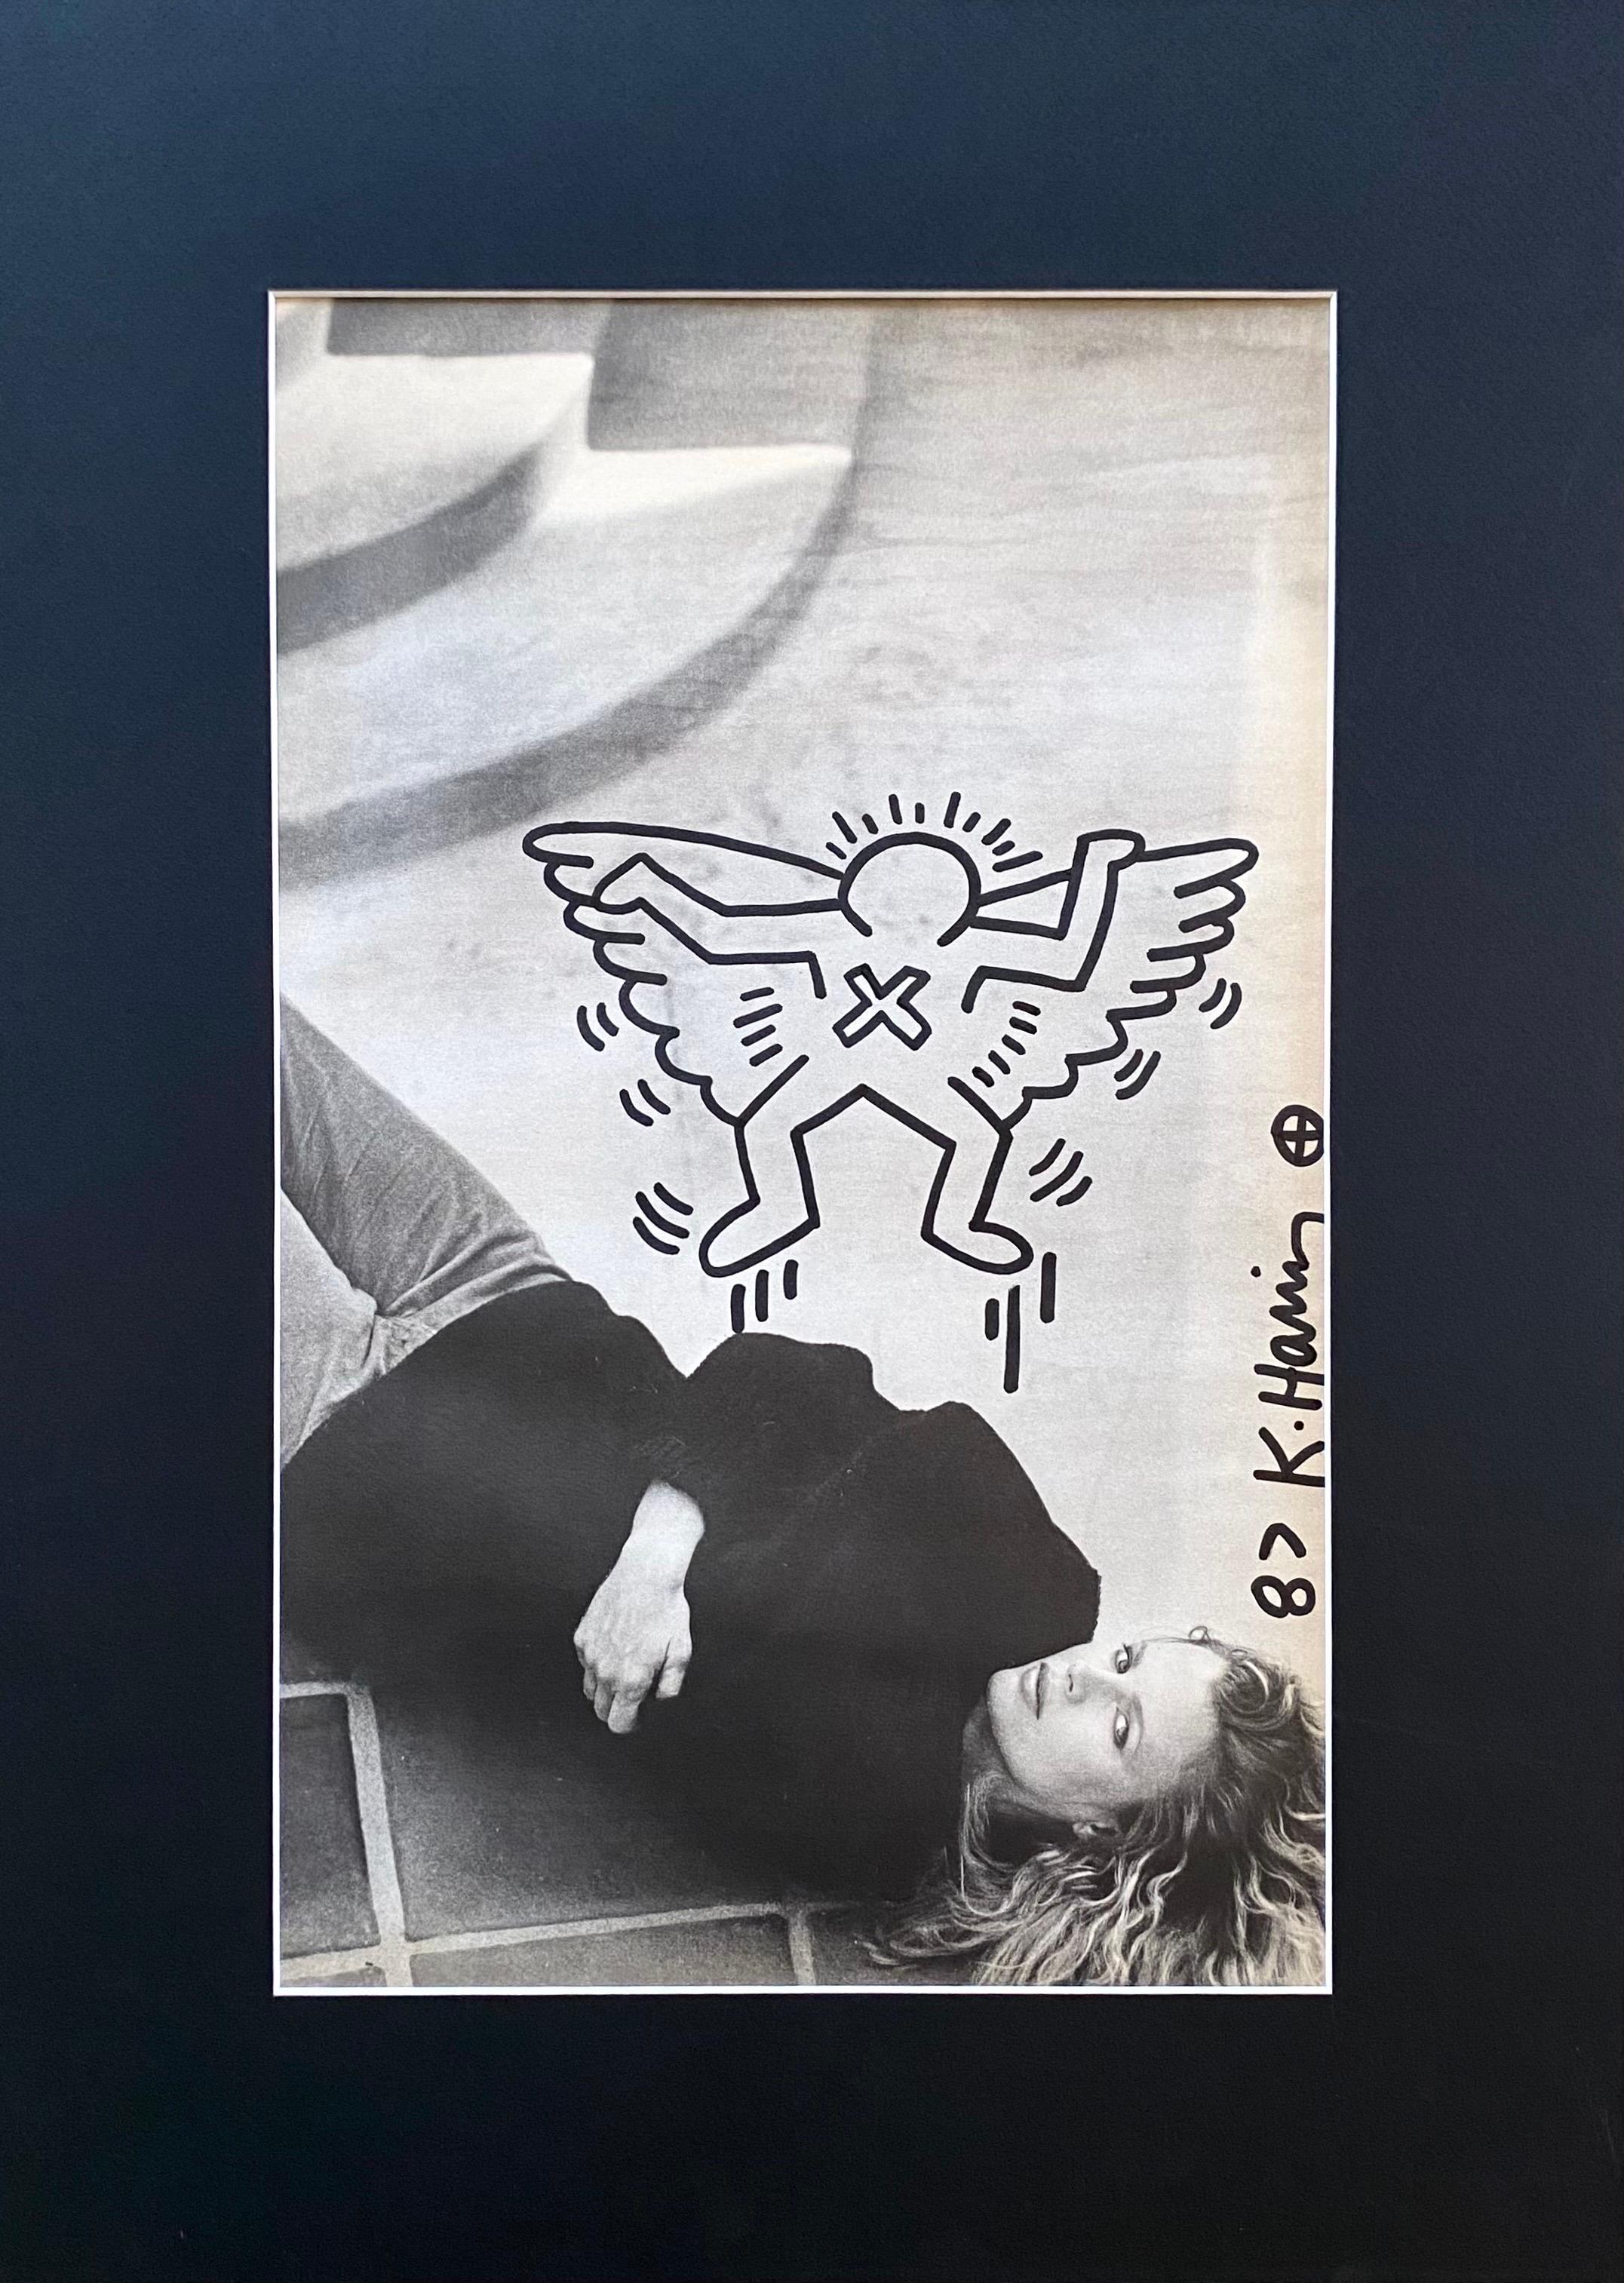 Pièce unique.
Rare dessin - Keith Haring - sur une page de magazine représentant l'actrice américaine Kim Basinger. Le dessin apparaît au verso de la page, qui comporte une deuxième photo de Kim Basinger.
Le motif représente l'un des personnages